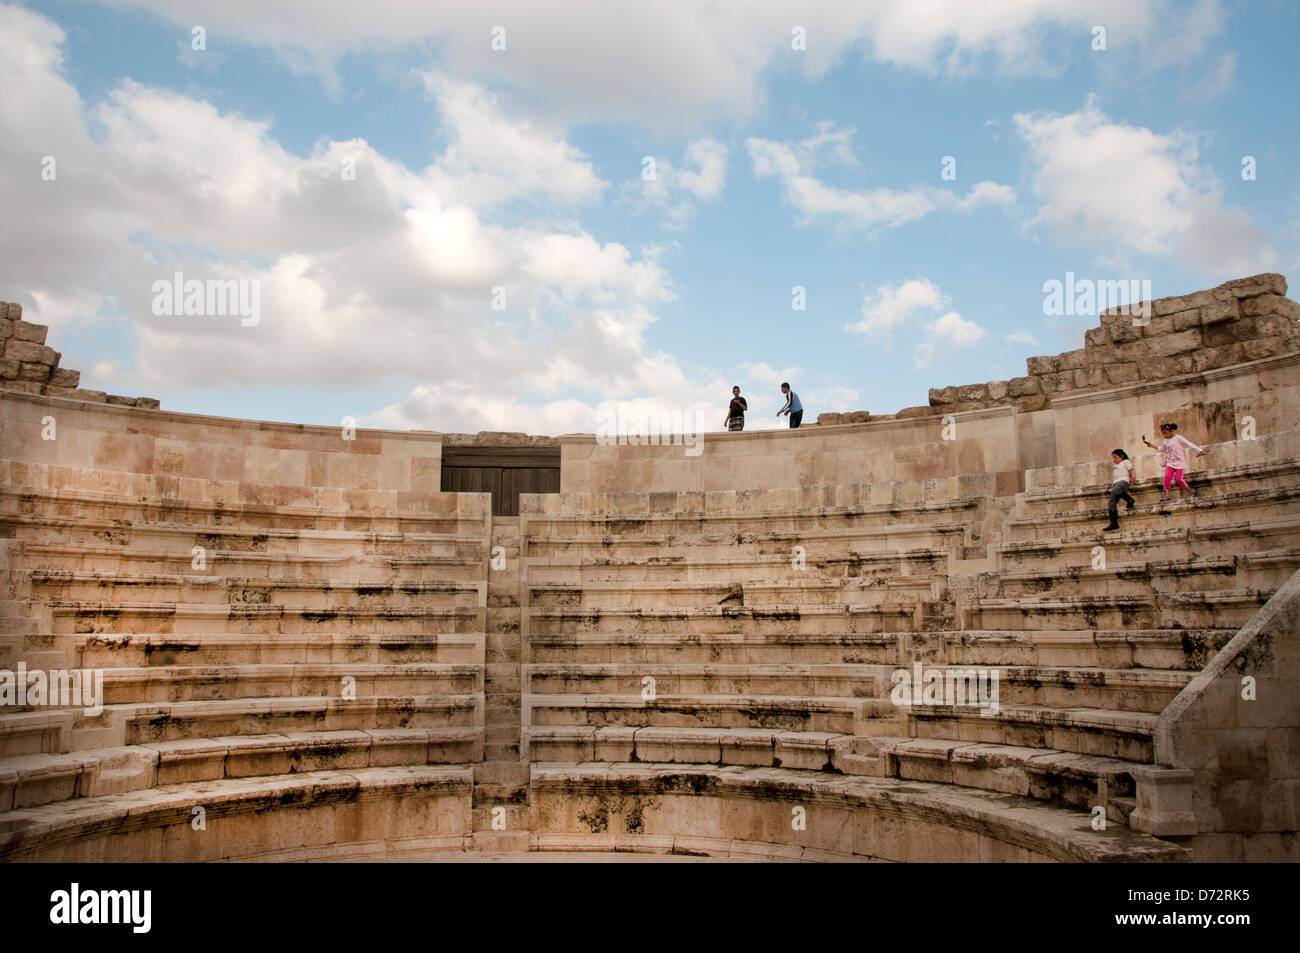 La Jordanie, Amman. Amphithéâtre romain avec enfants jouant Banque D'Images